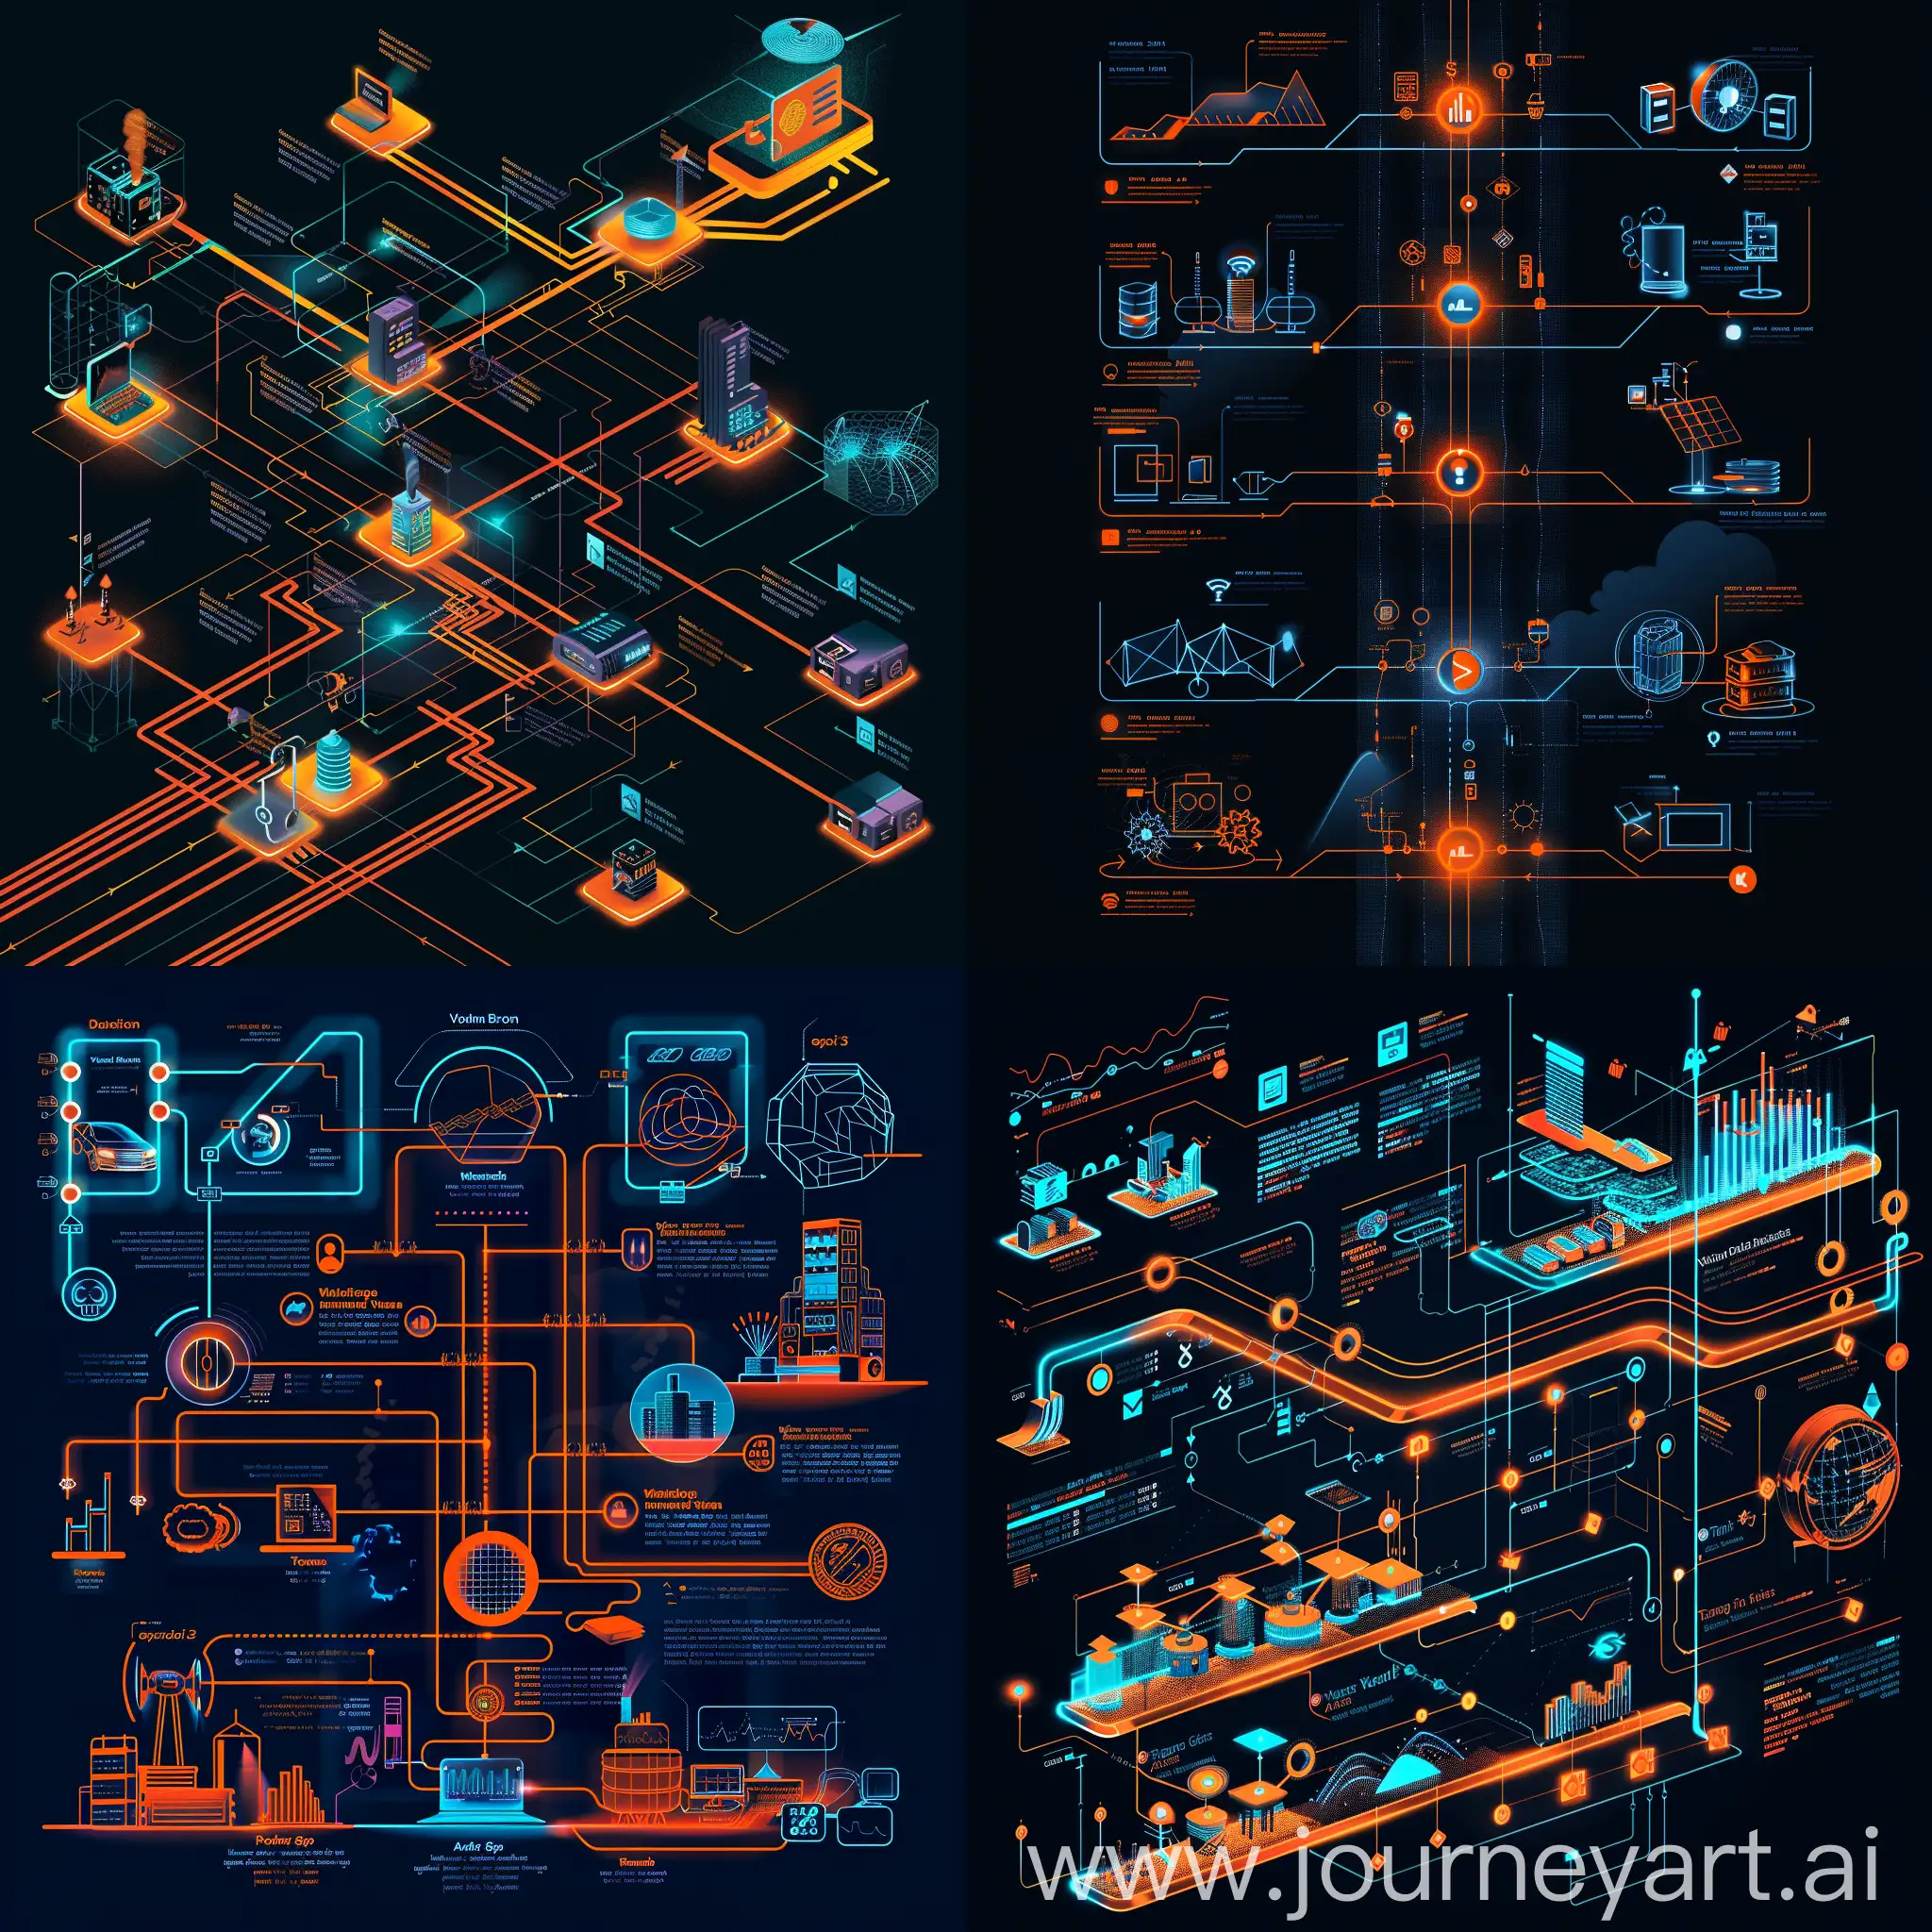 grafico eyebird de 3 niveles relacionando tecnologias e industrias con colores naranjas y azules neon